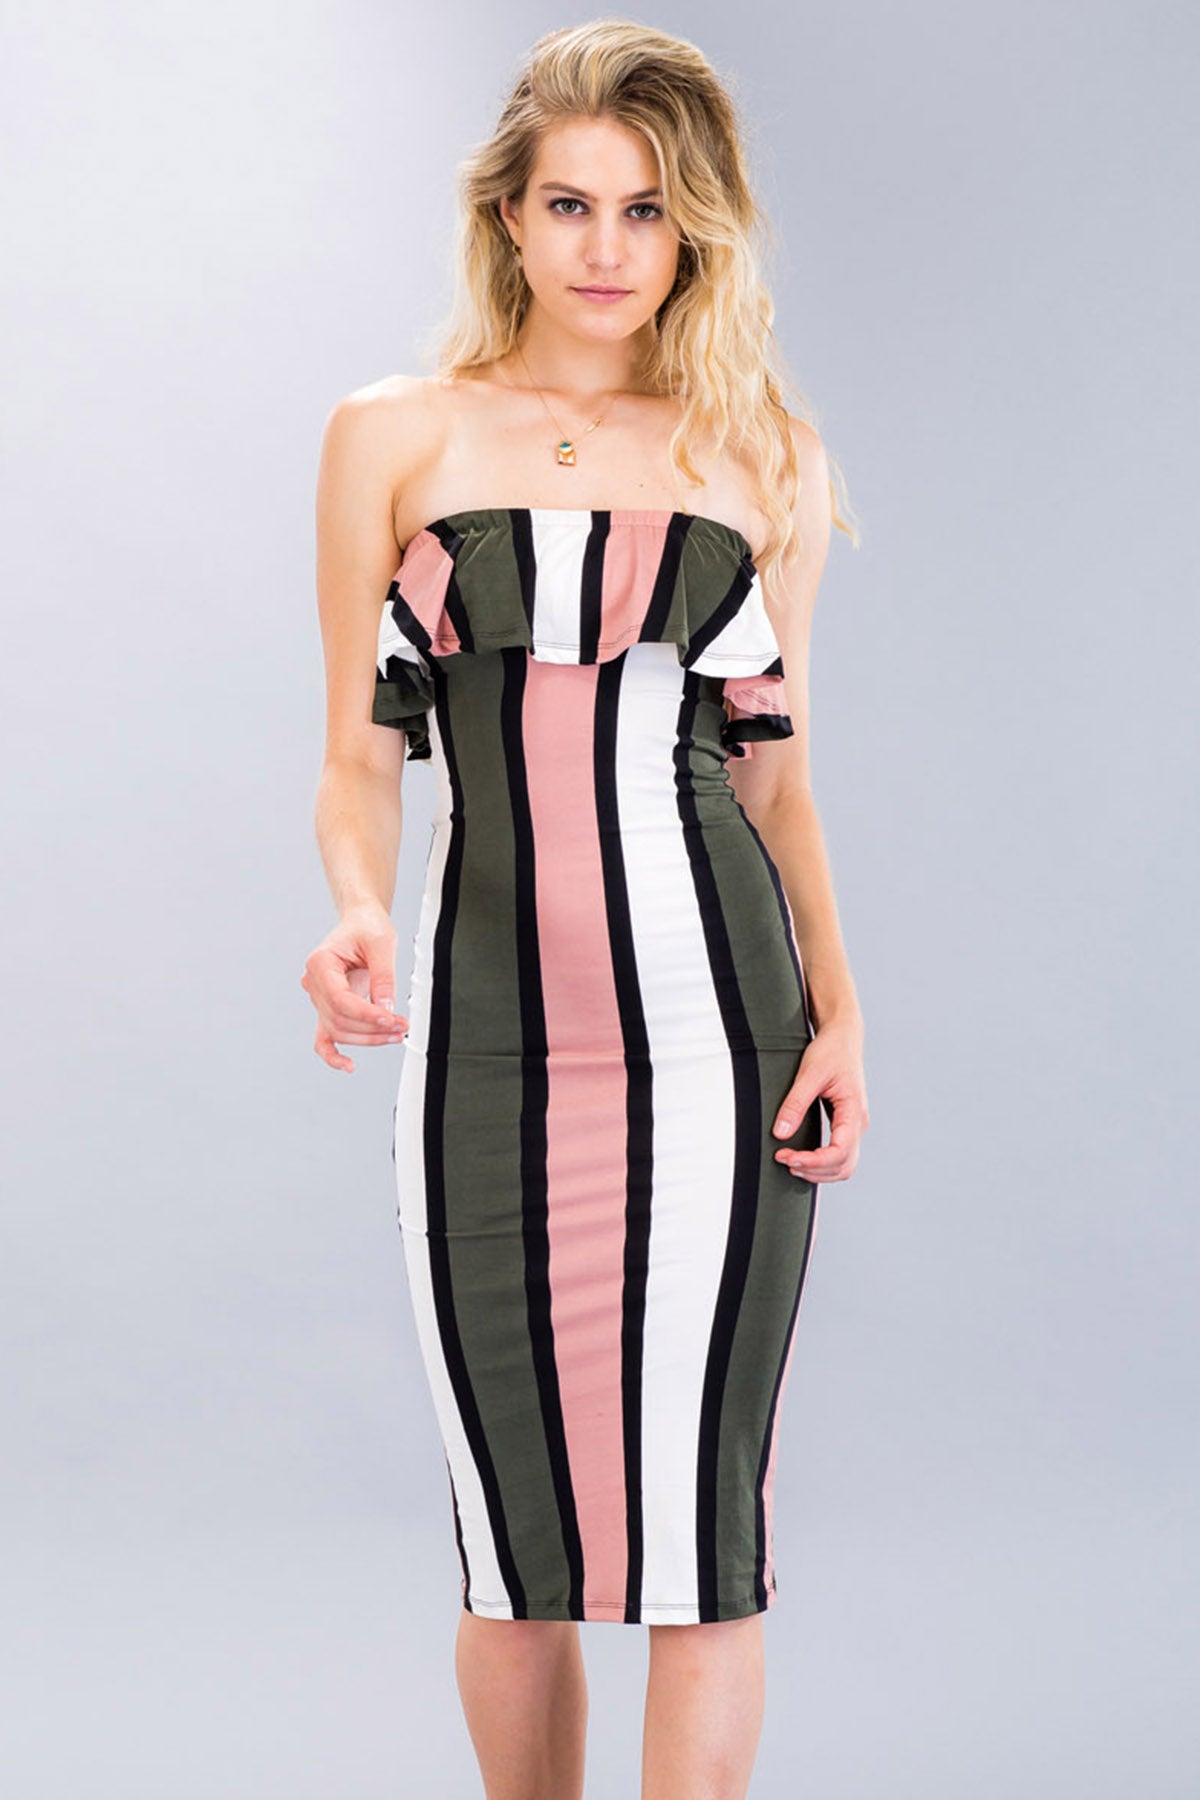 [$3/piece] Multicolor Striped Ruffle Tube Dress